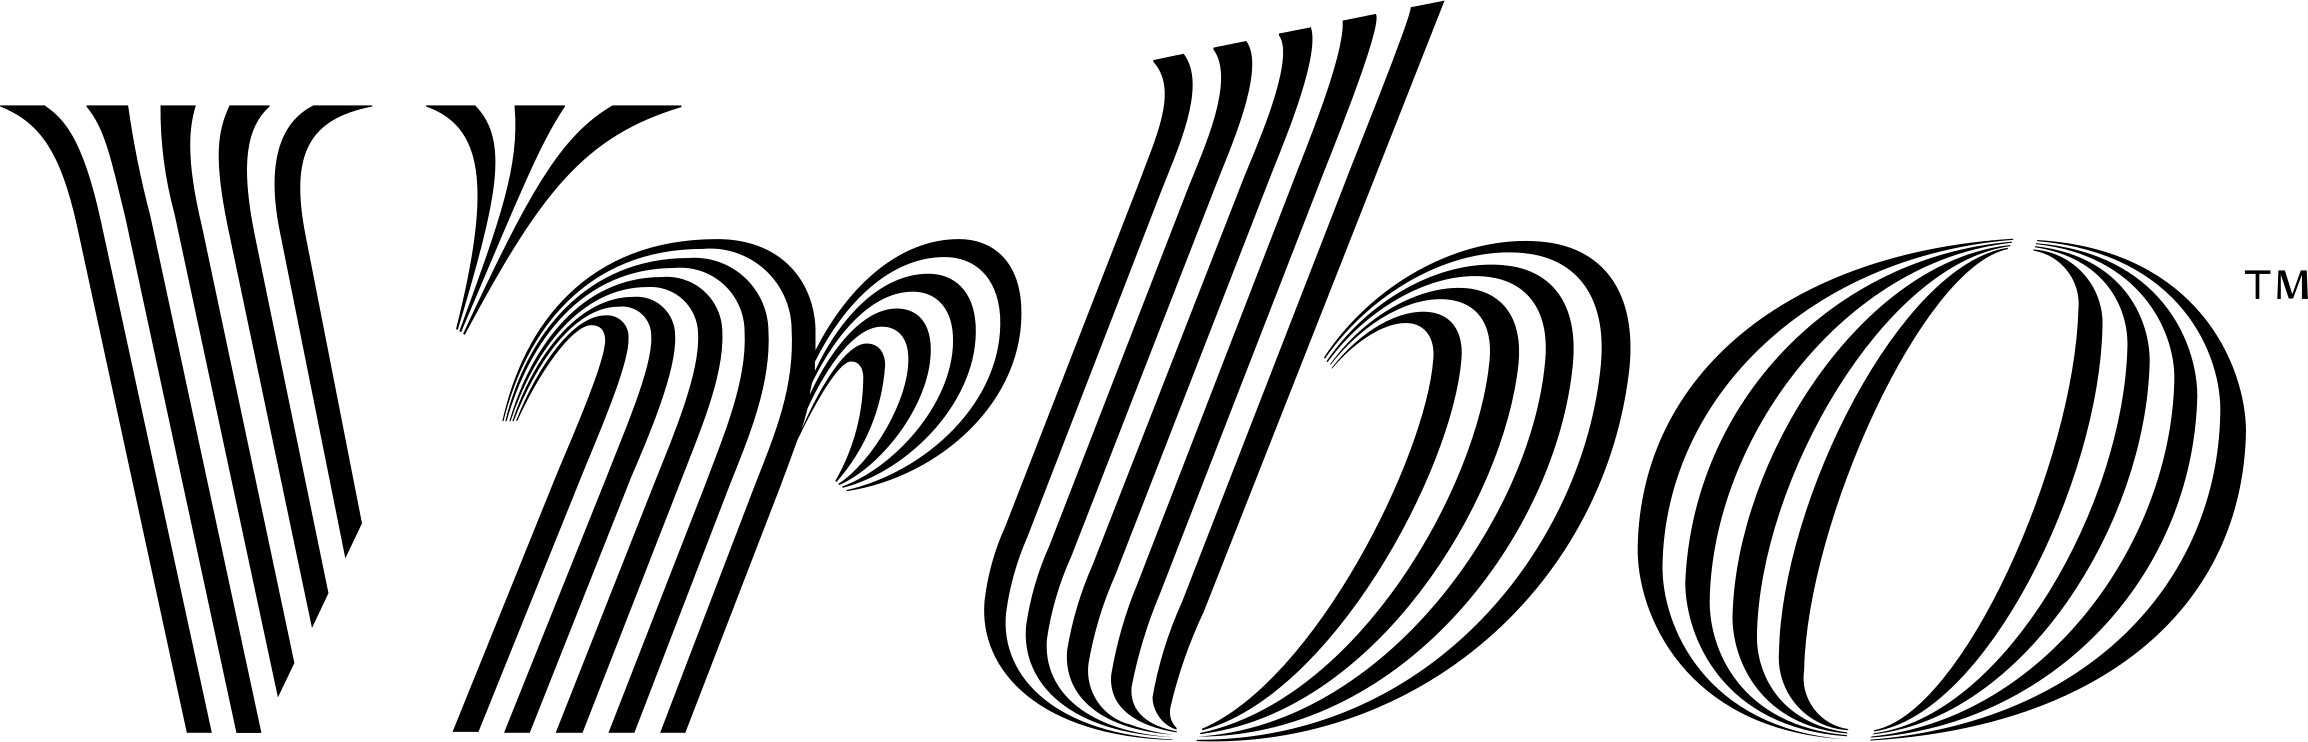 vrbo-logo